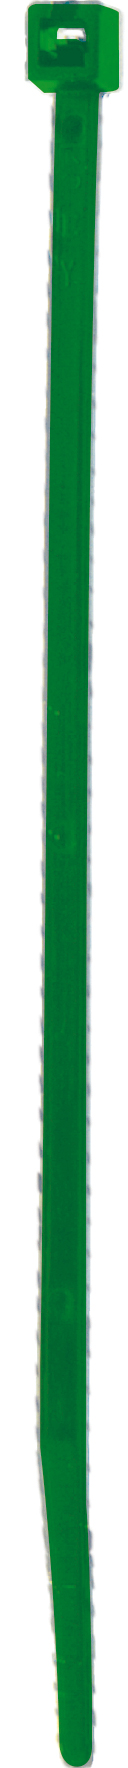 Cod. 36300Z481900C - FS Fascetta per cablaggio in nylon - Verde